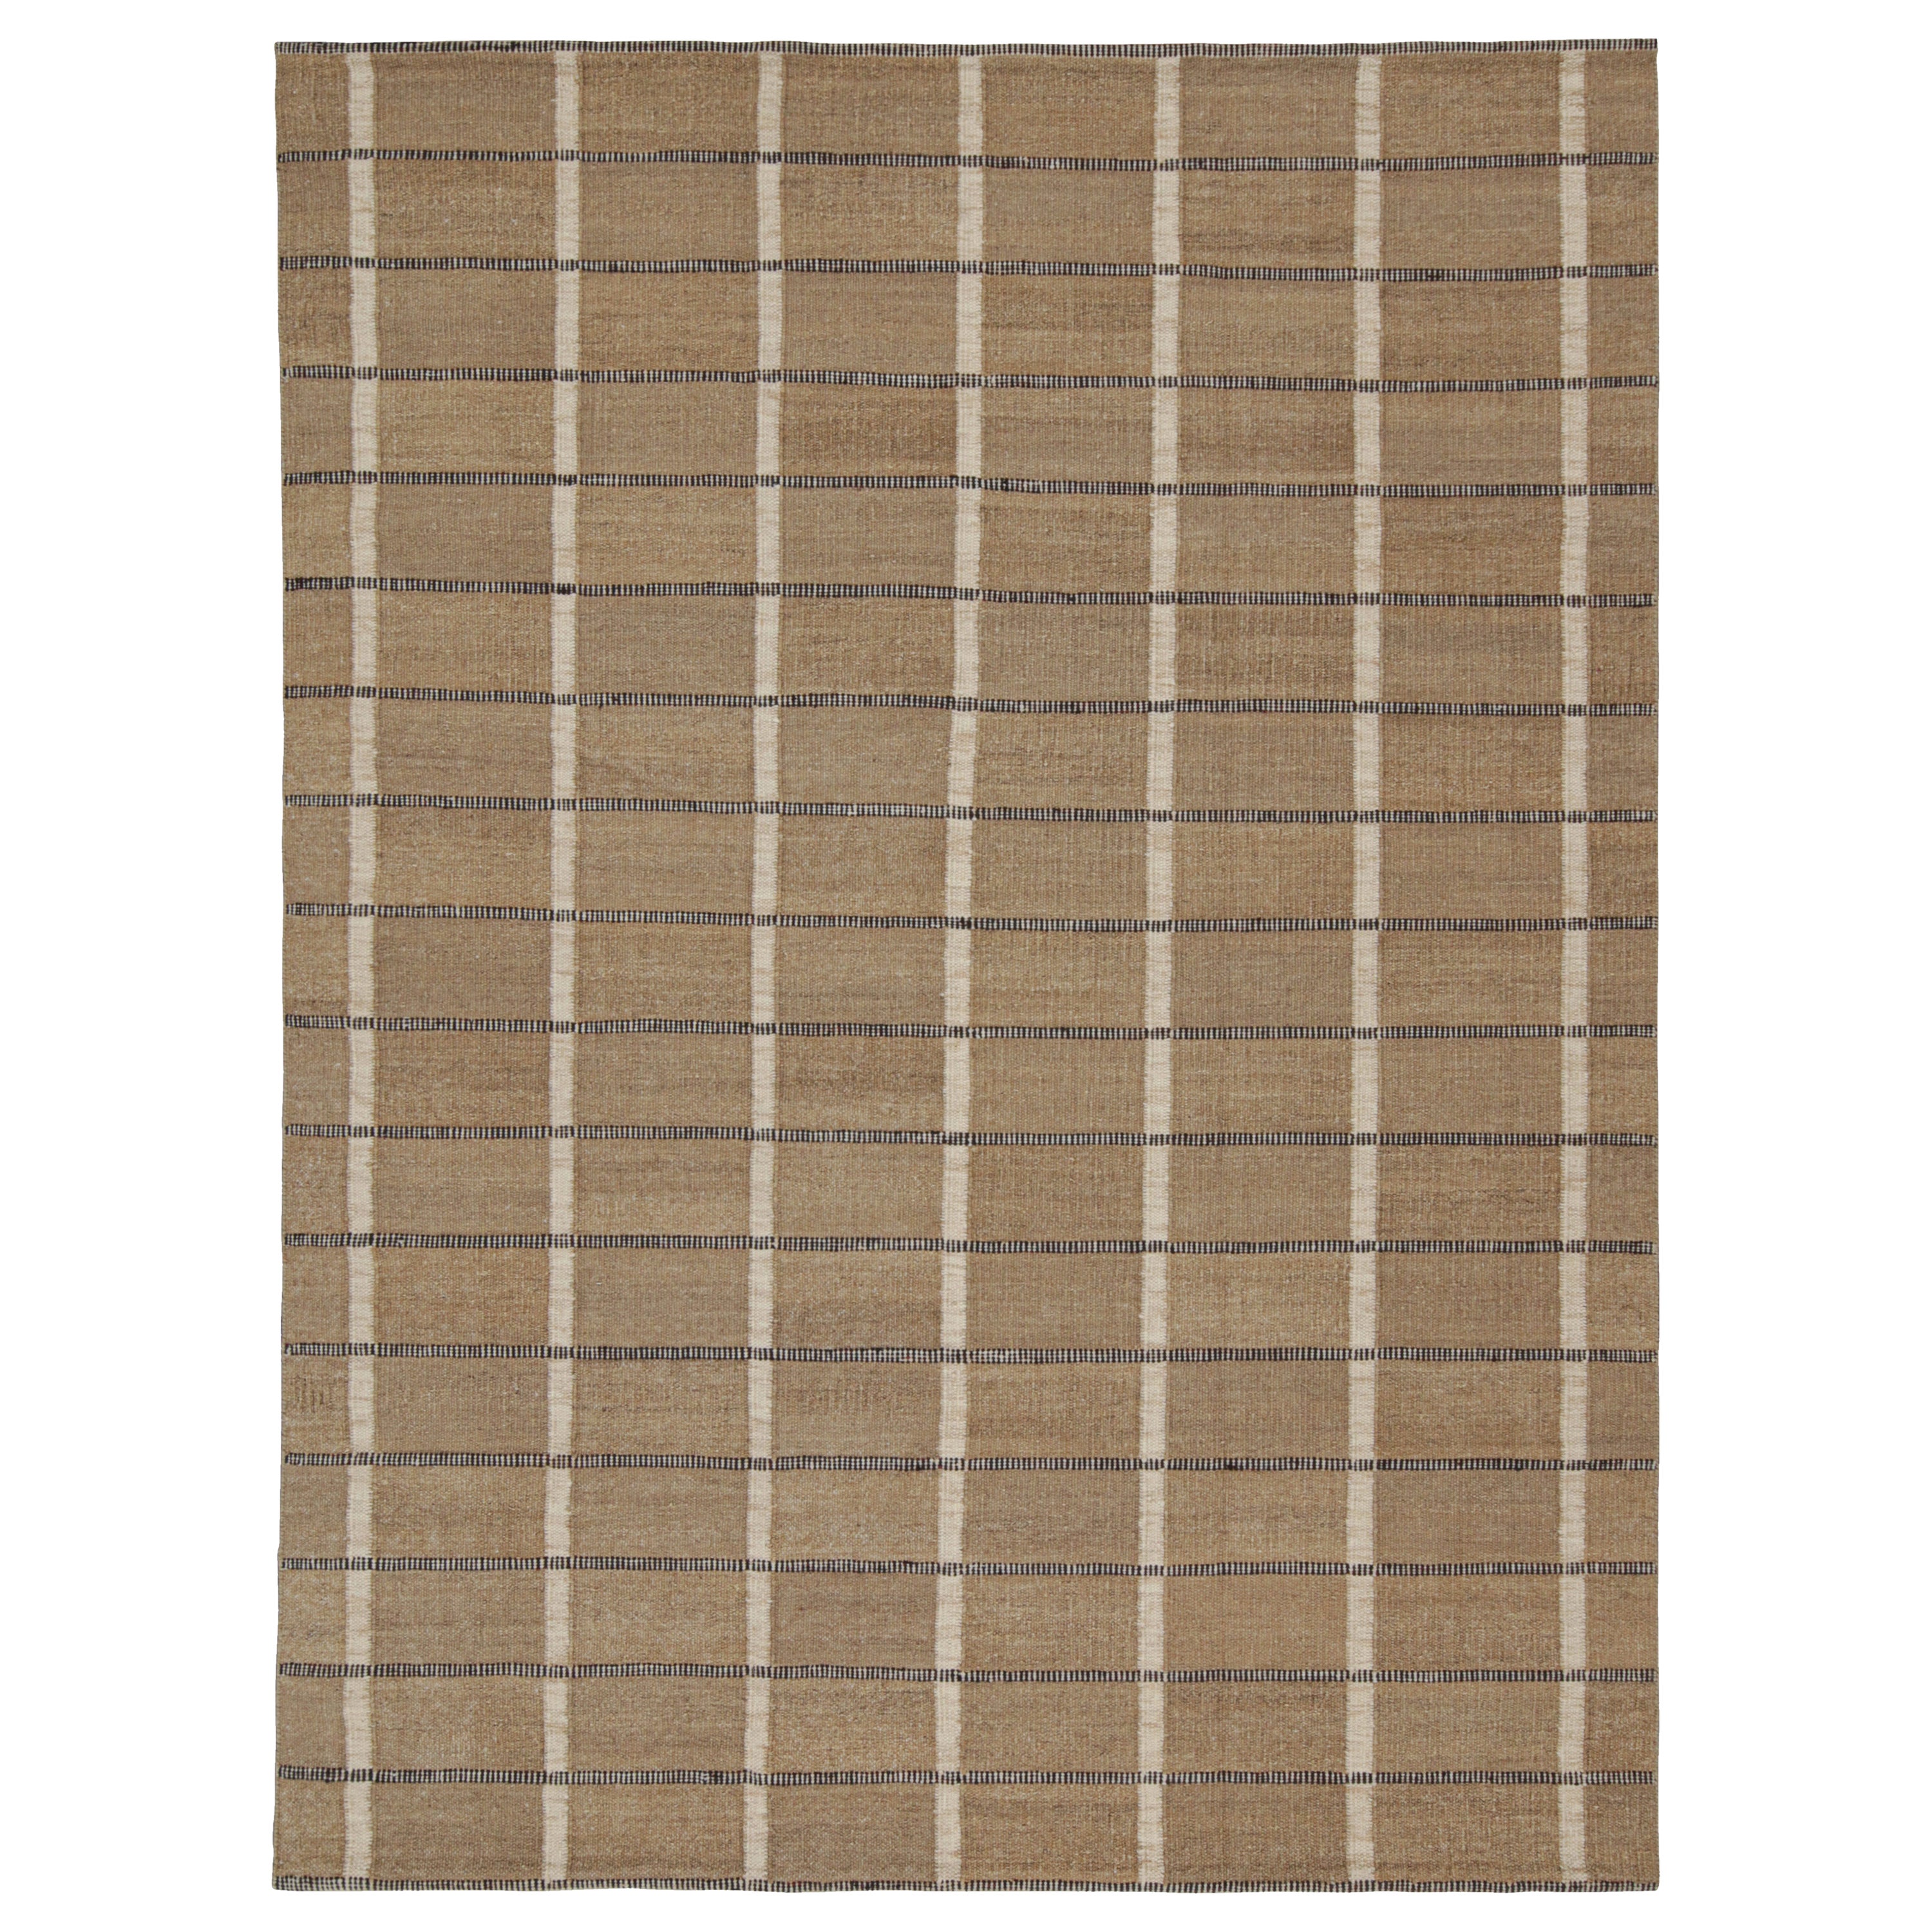 Rug & Kilims maßgefertigter Kilim-Teppich im skandinavischen Stil in Braun, Weiß und Schwarz